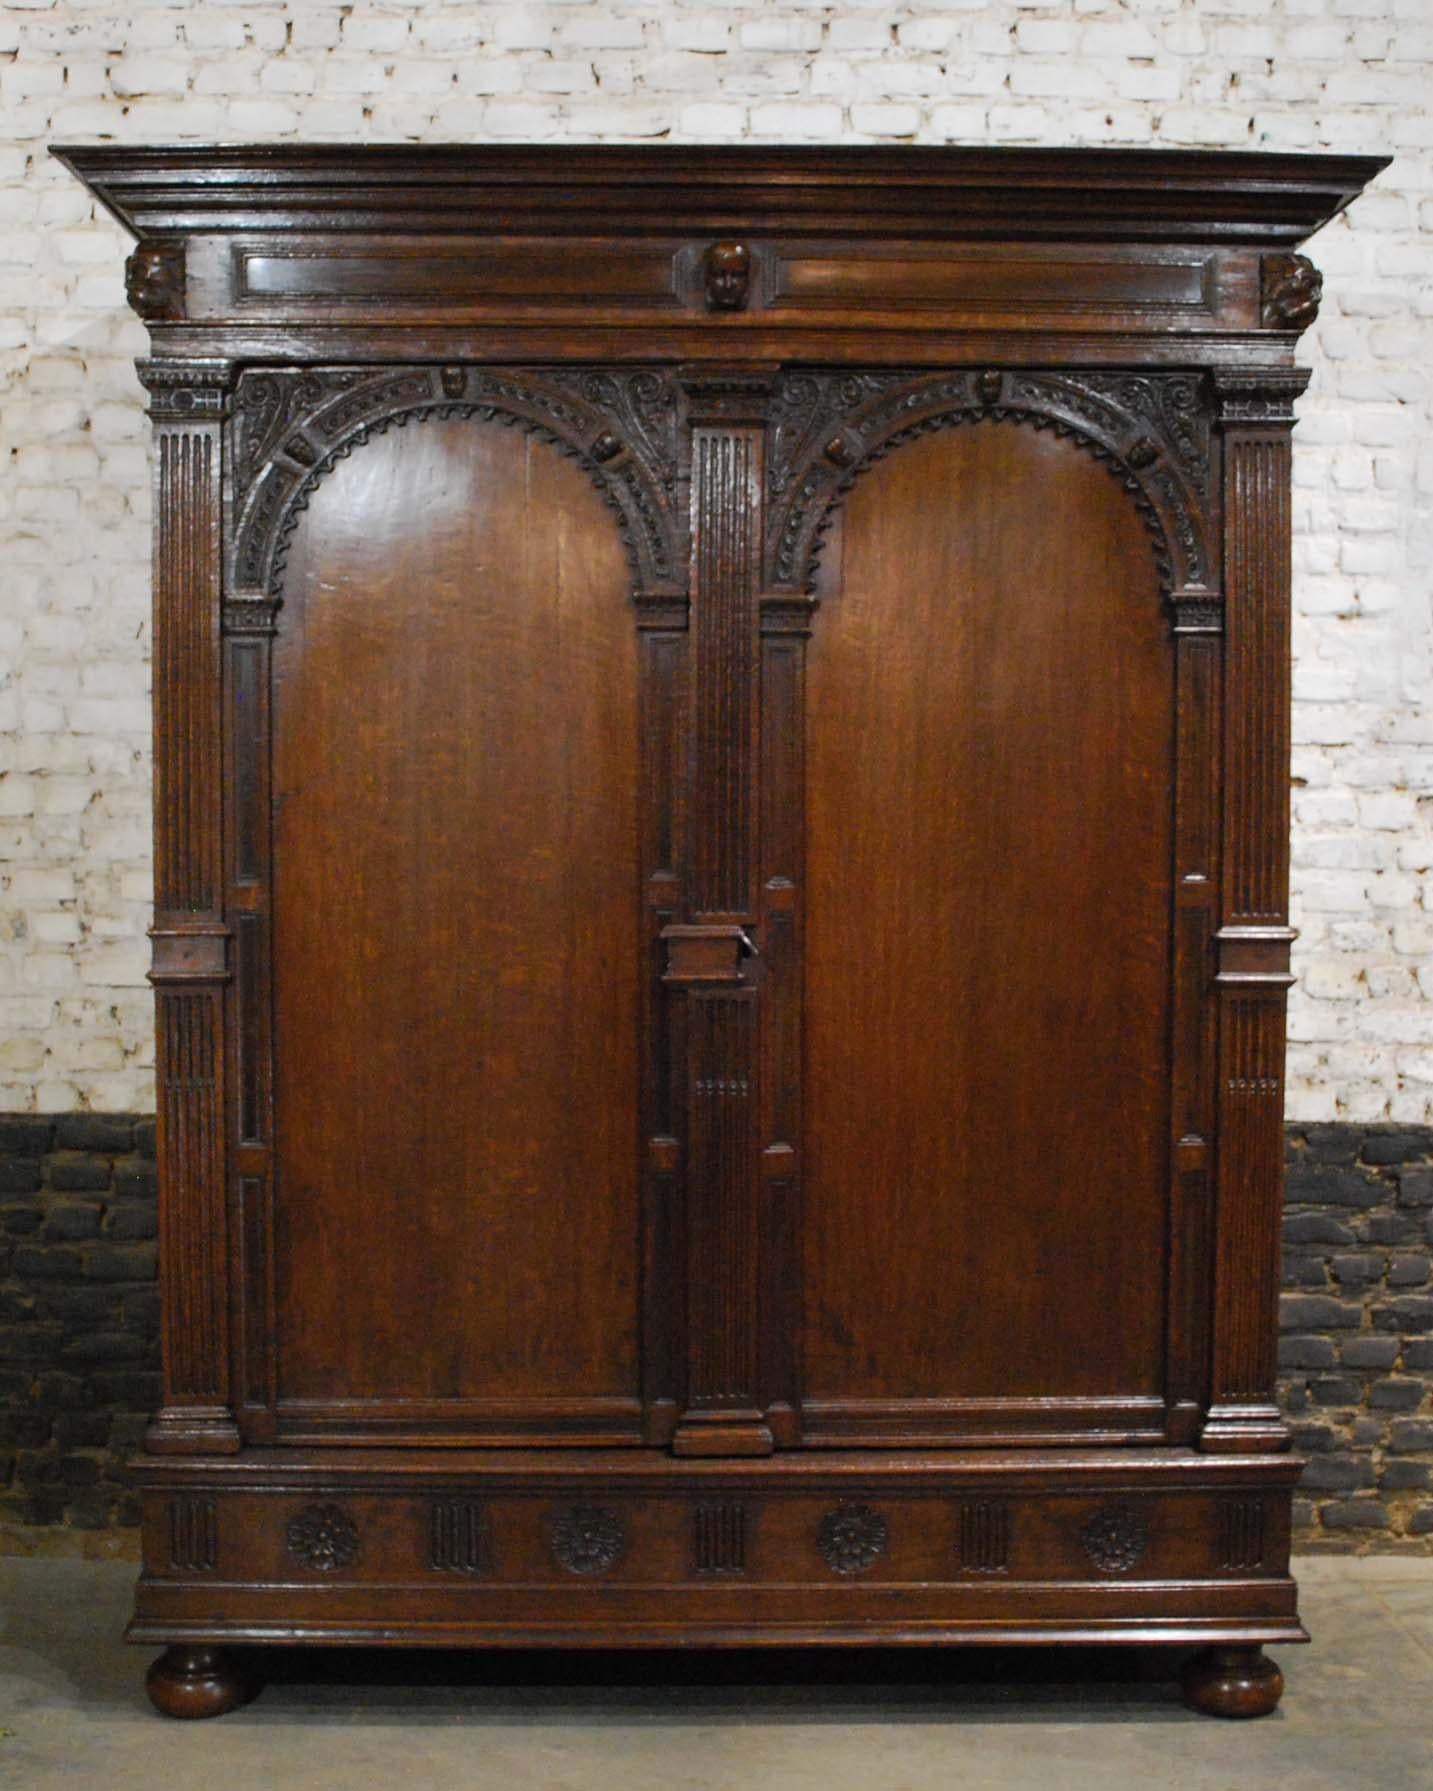 Cette rare armoire hollandaise est fabriquée dans le plus beau chêne, dans la tradition de la Renaissance hollandaise, à l'époque de 